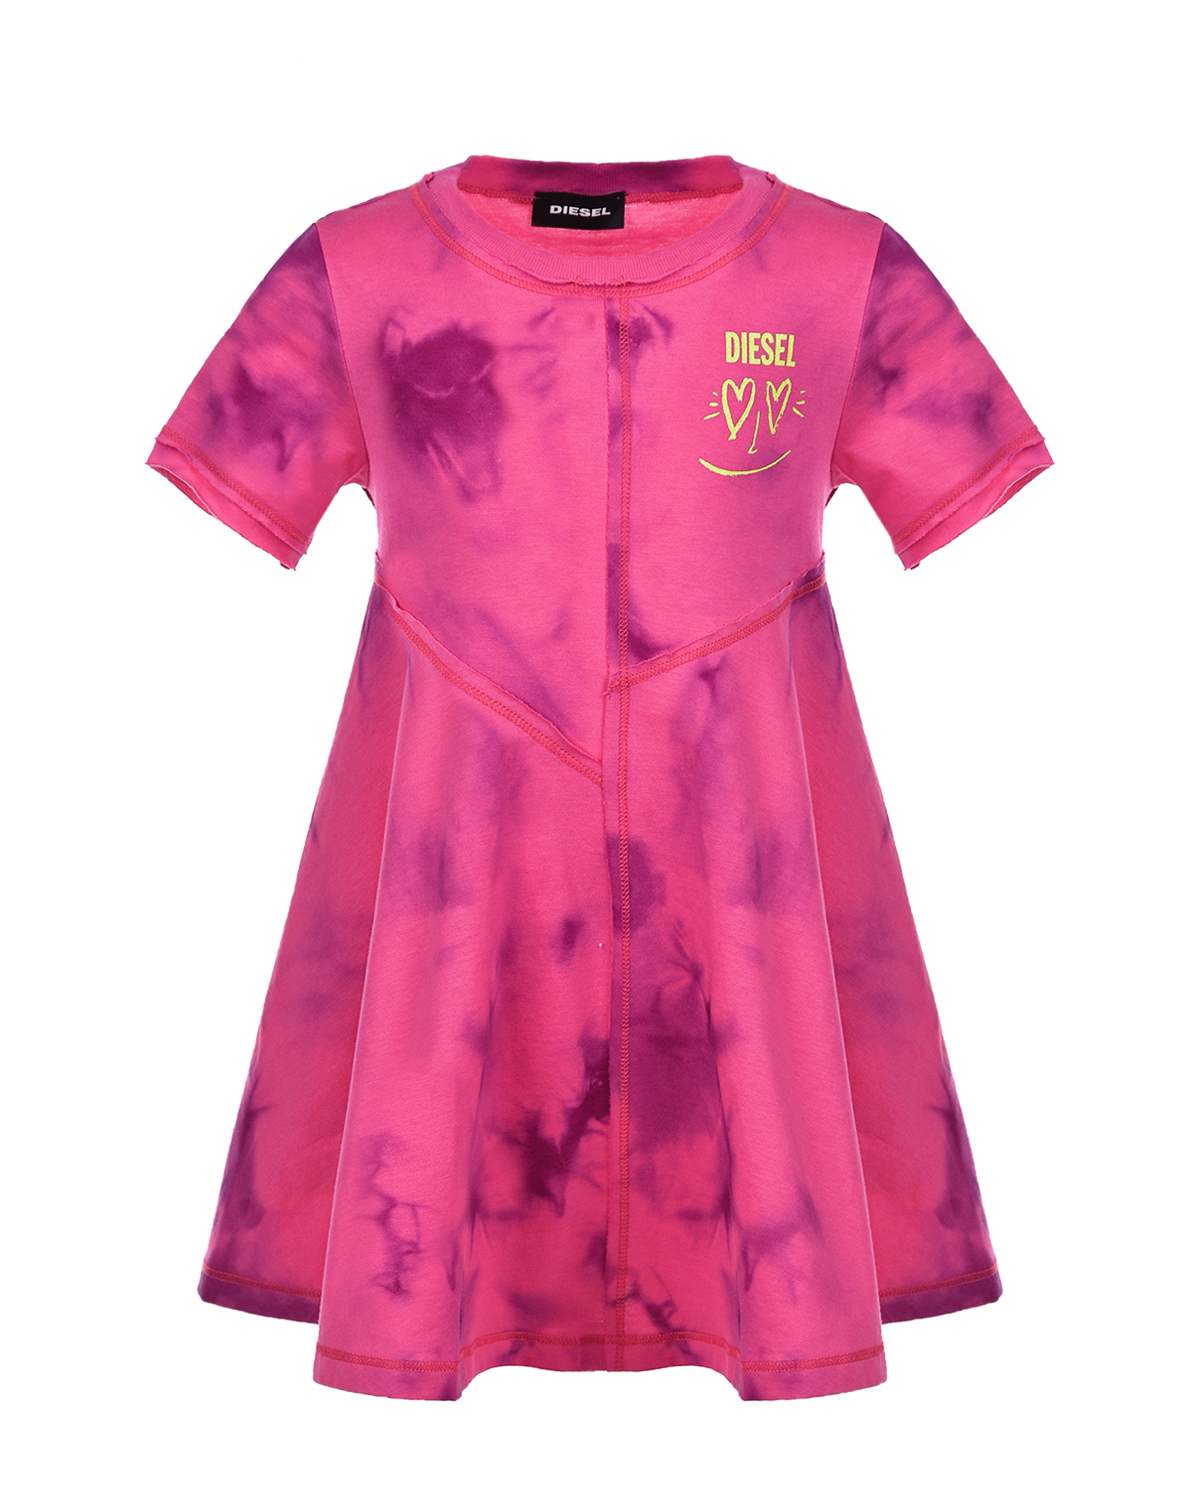 Платье цвета фуксии в стиле tie-dye Diesel детское, размер 92 - фото 1